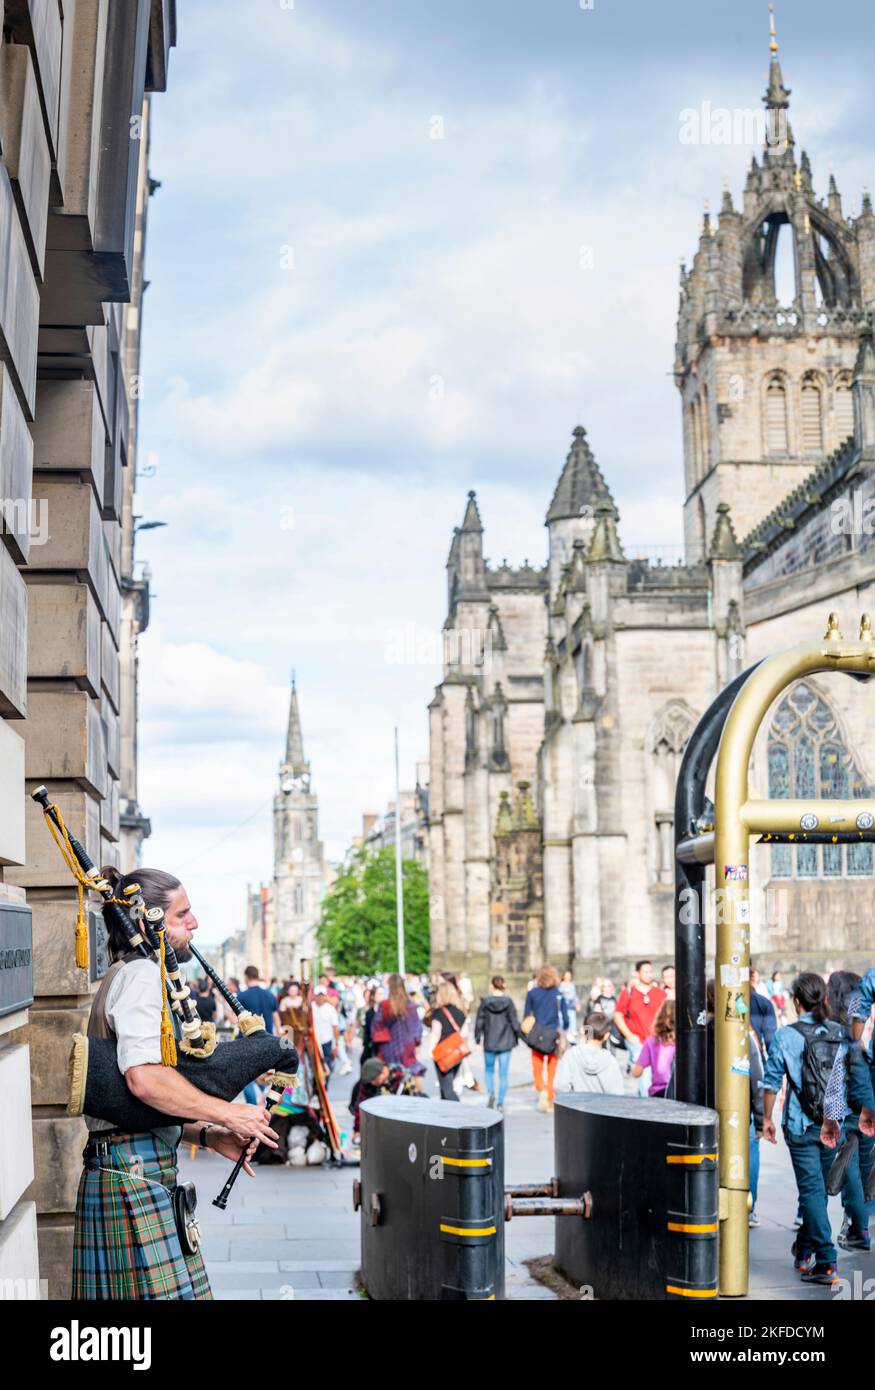 Edinburgh, Schottland-Juli 30 2022:Ein schottischer Pfeifenspieler in traditioneller schottischer Kleidung,Buschs für Touristen und Passanten,neben Sicherheitsbarrieren,durin Stockfoto